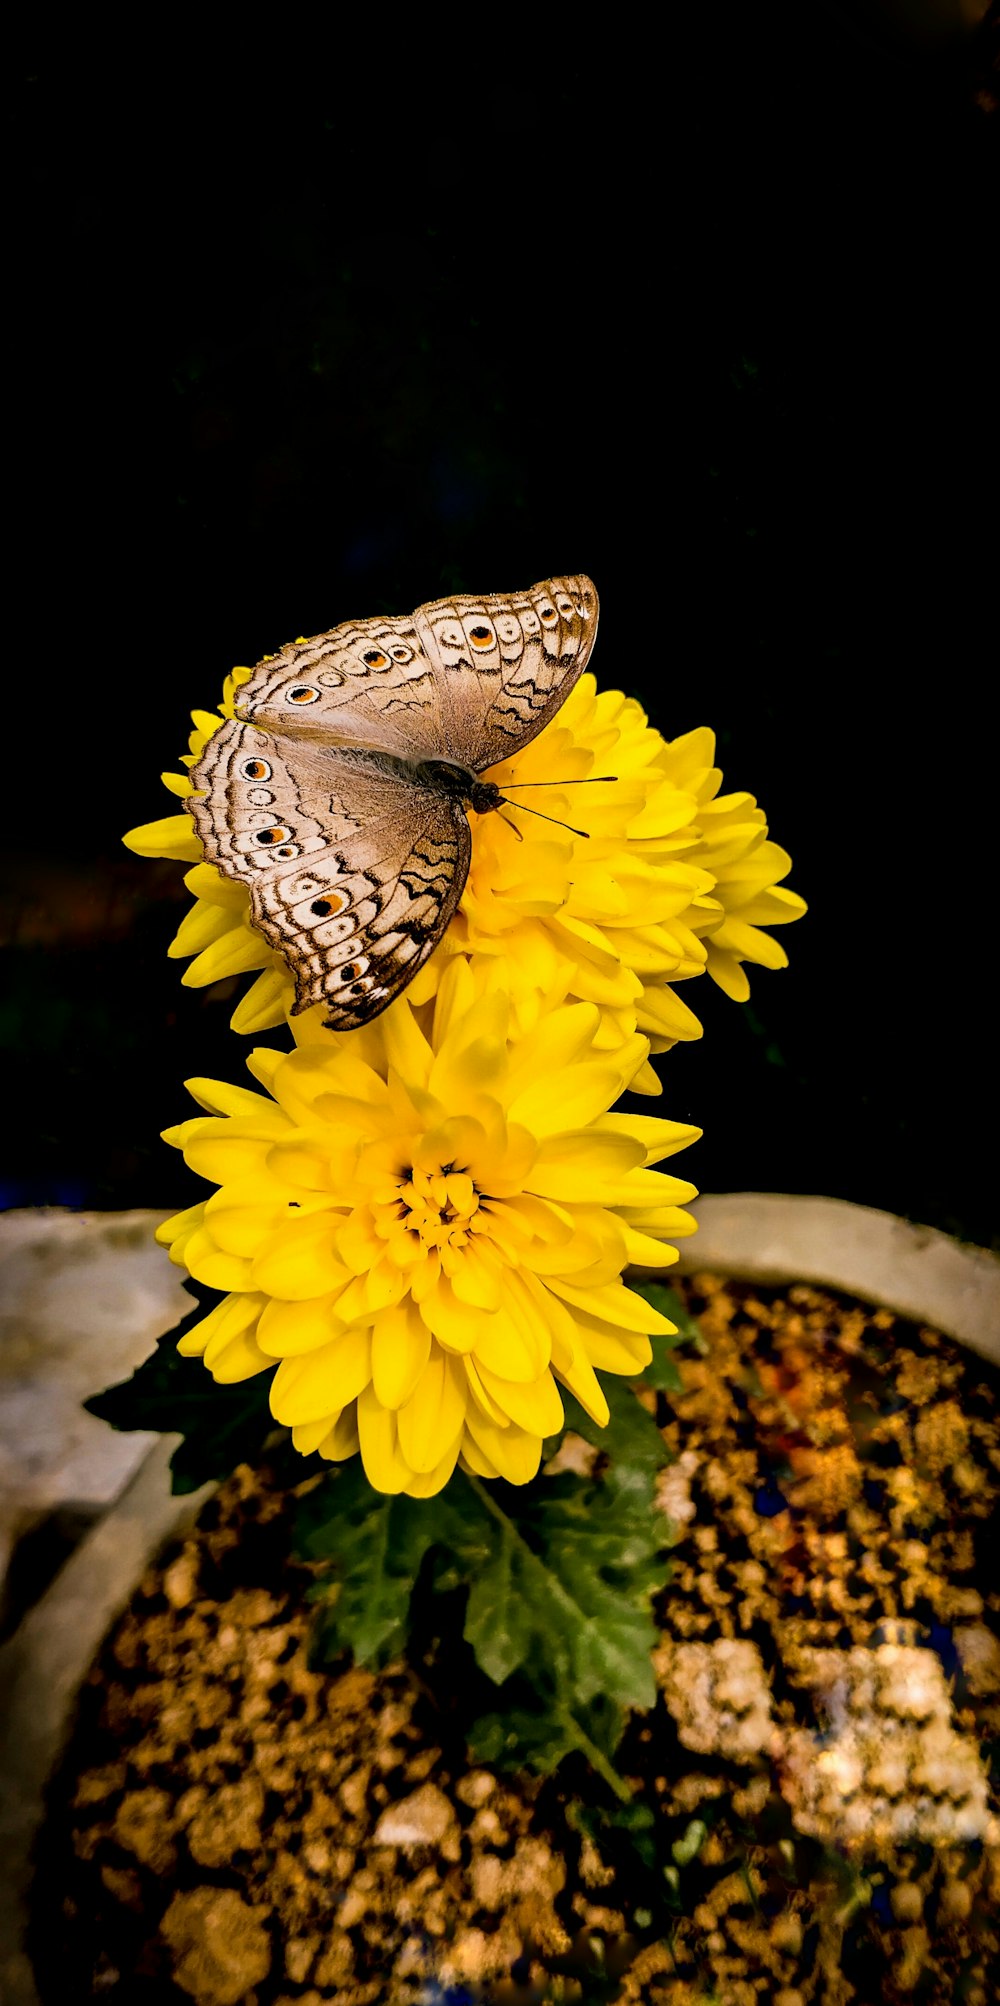 mariposa blanca y negra sobre flor amarilla